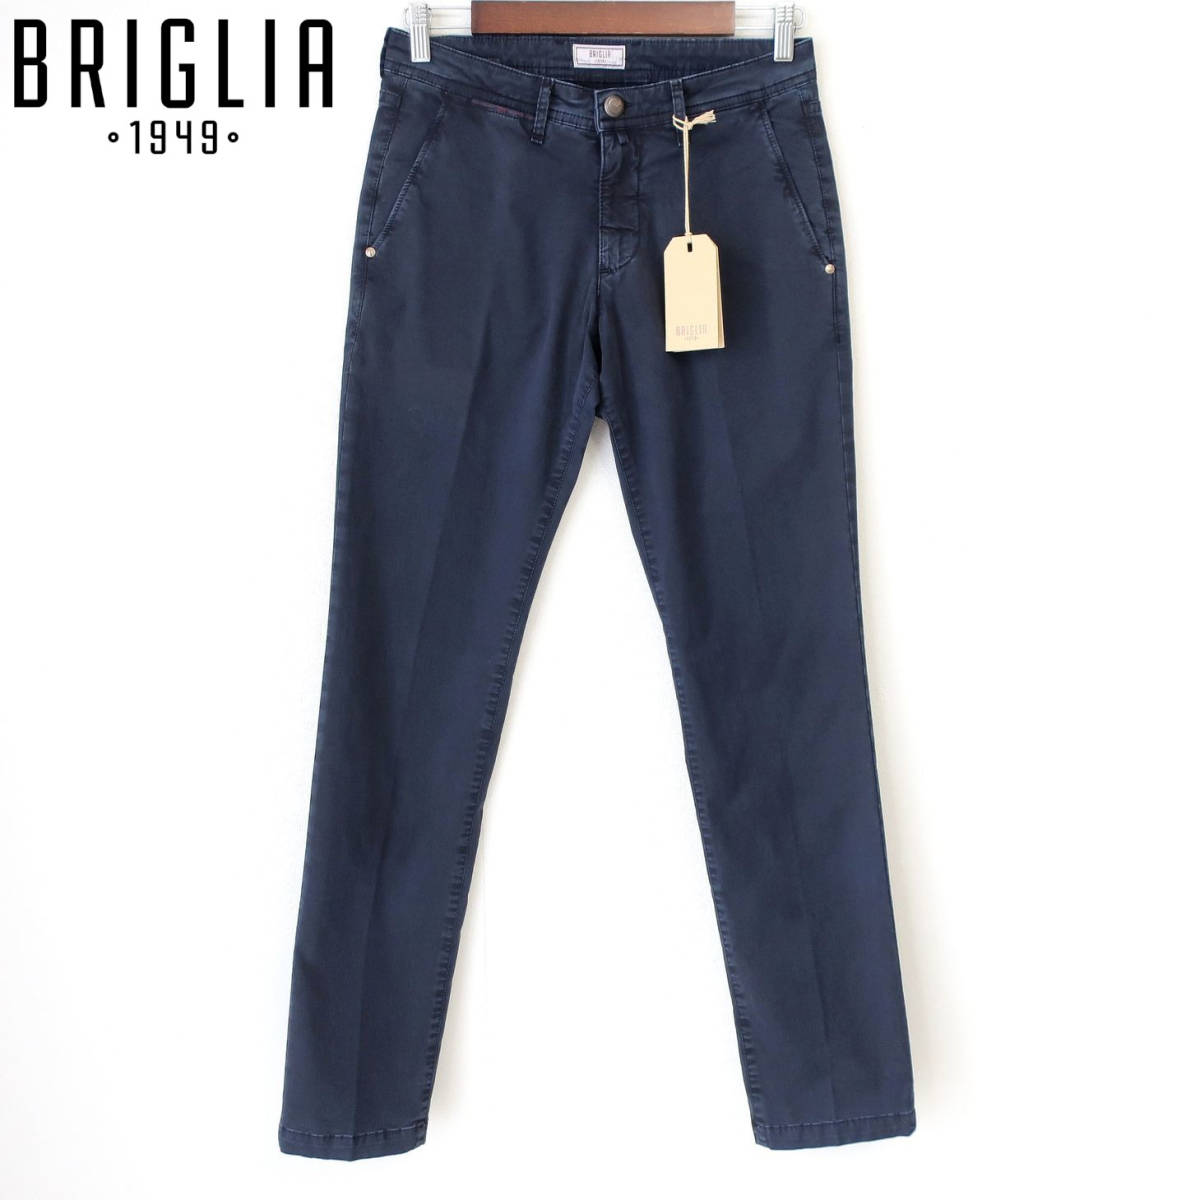 新品 未使用 BRIGLIA 1949 メンズ ストレッチ ジーンズ パンツ イタリアン デニム スリム 細身 チノパン 紺 ネイビー 44 W30 Sサイズ 程度